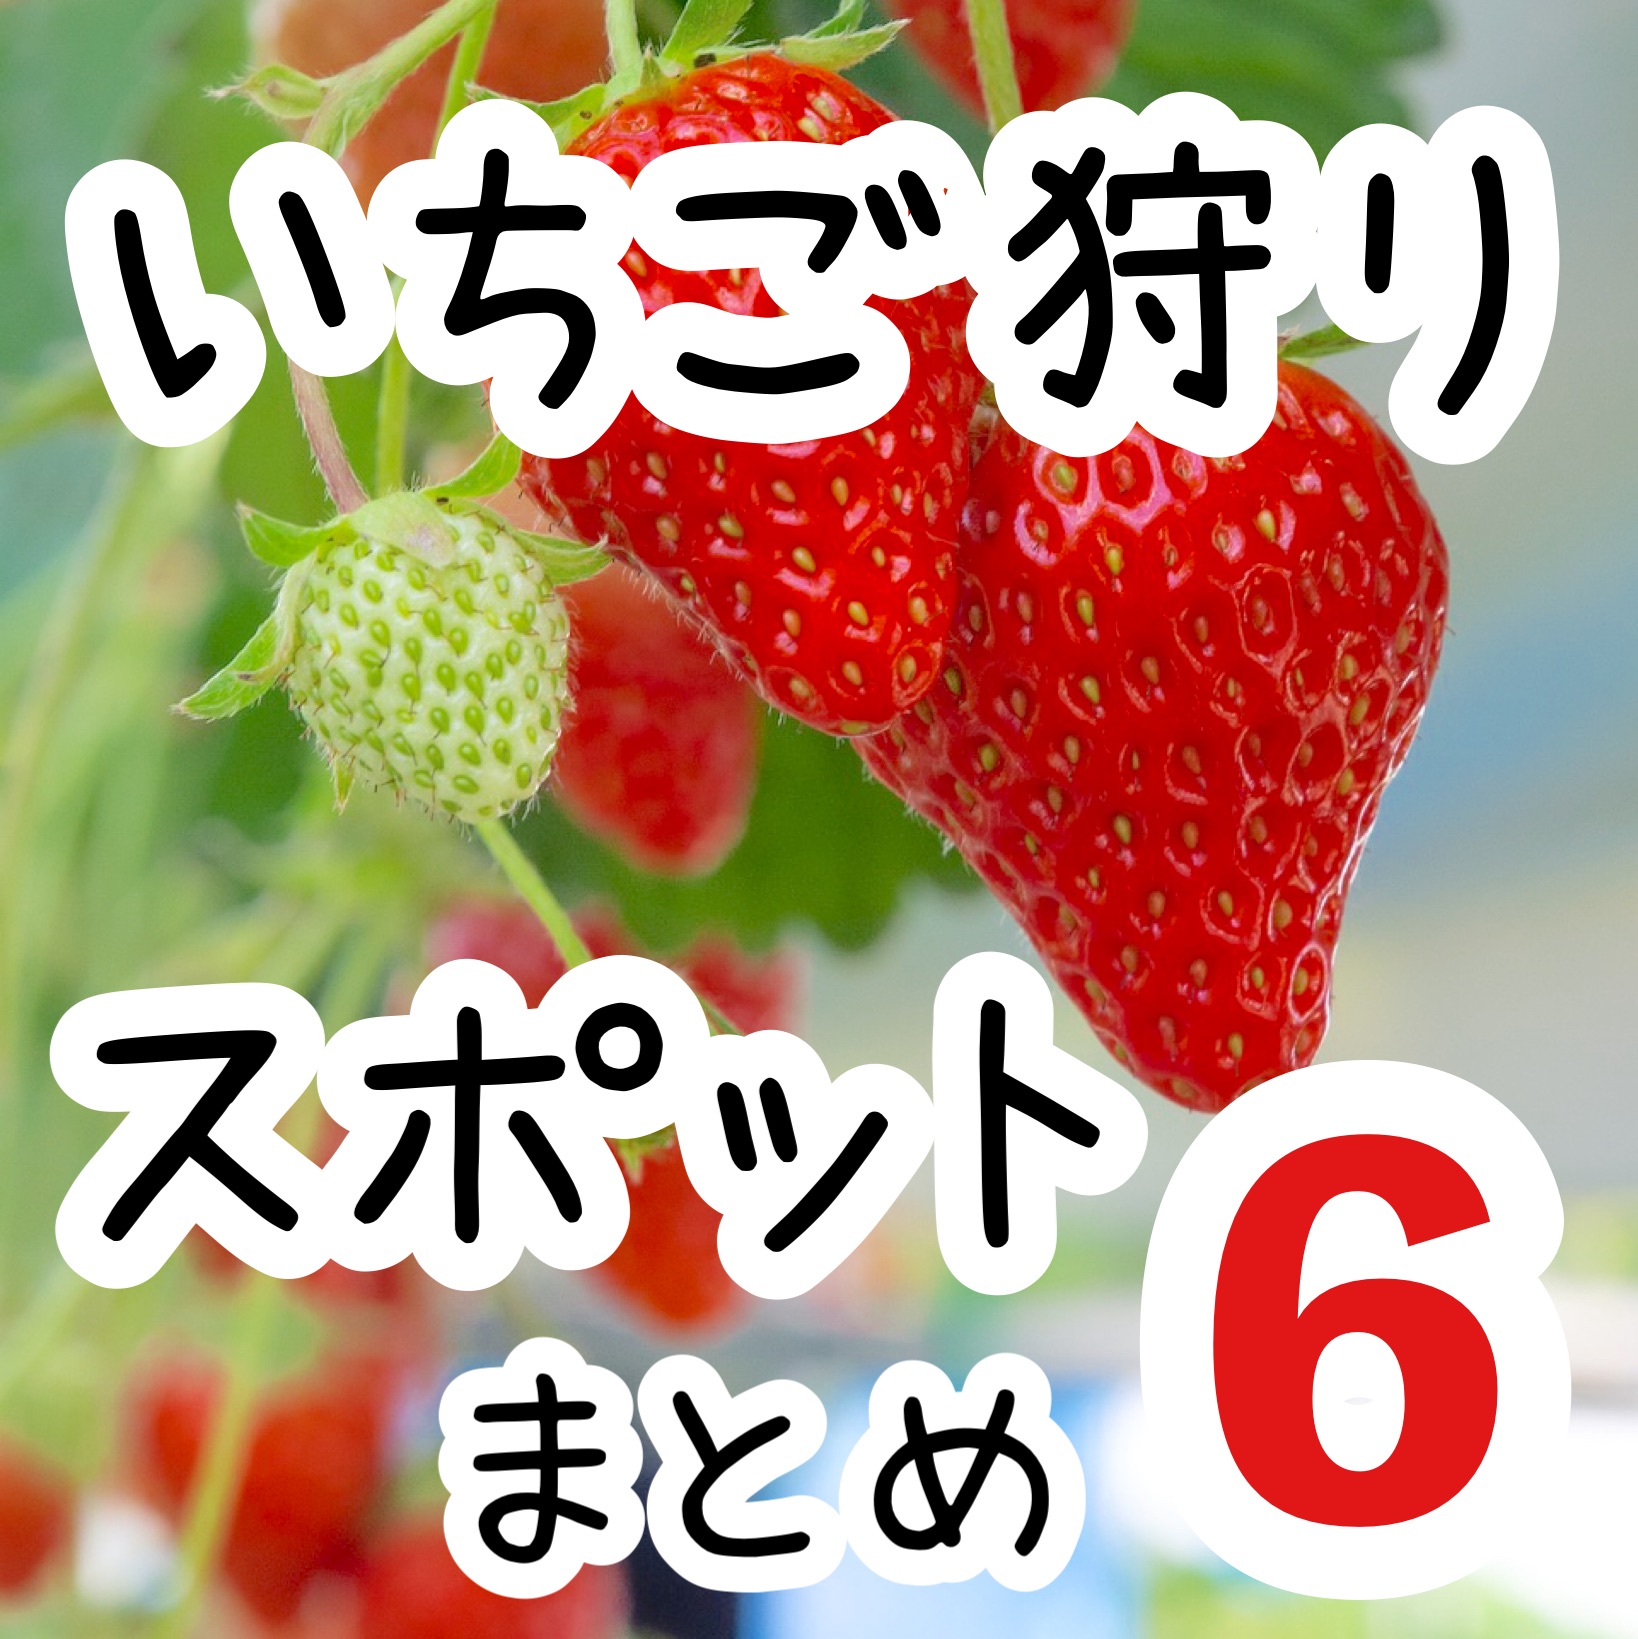 【关东】草莓采摘景点6选